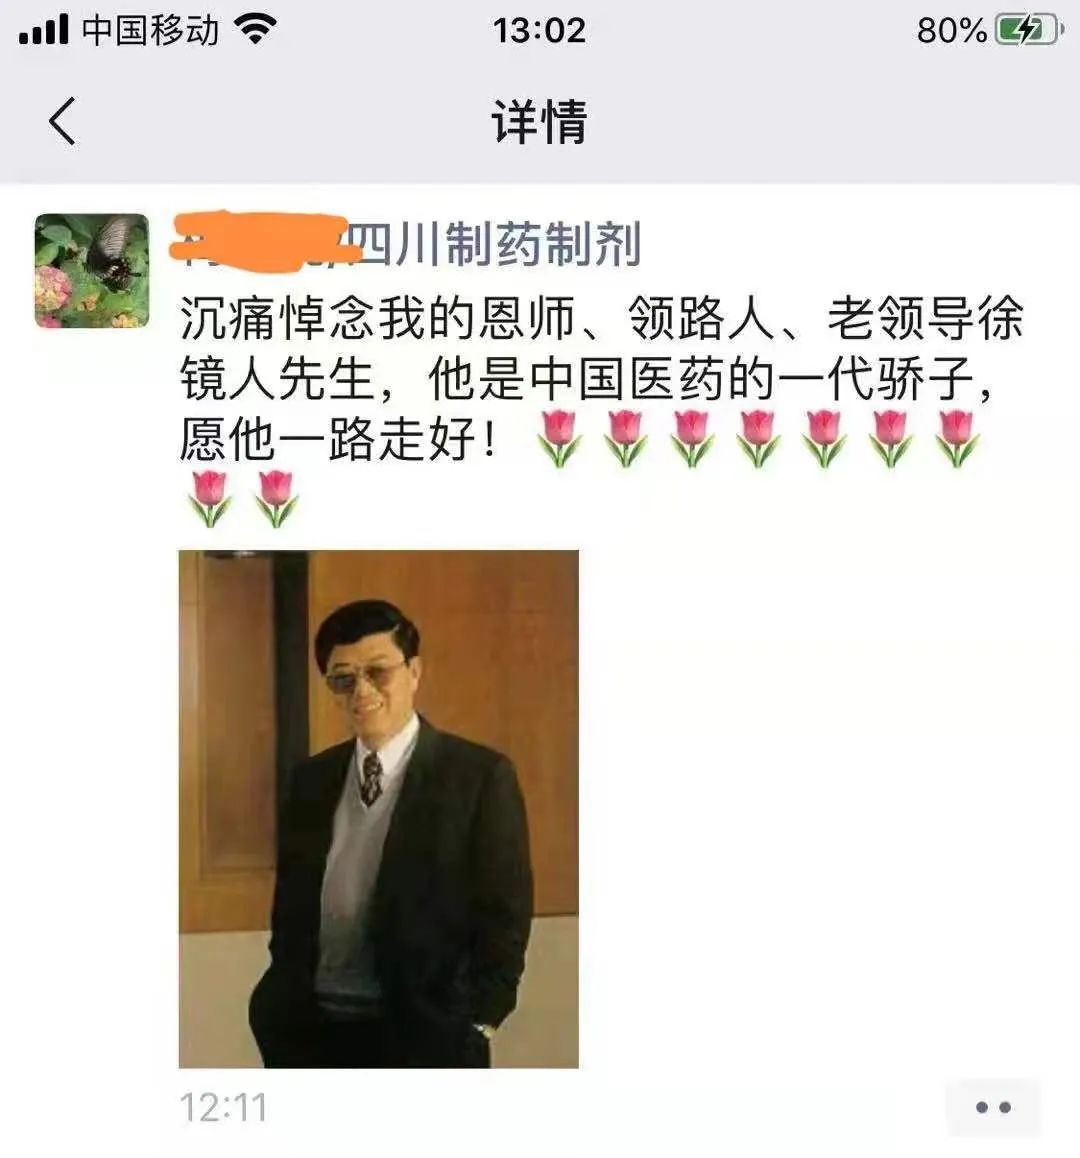 沉痛悼念！扬子江药业董事长徐镜人逝世，享年77岁！